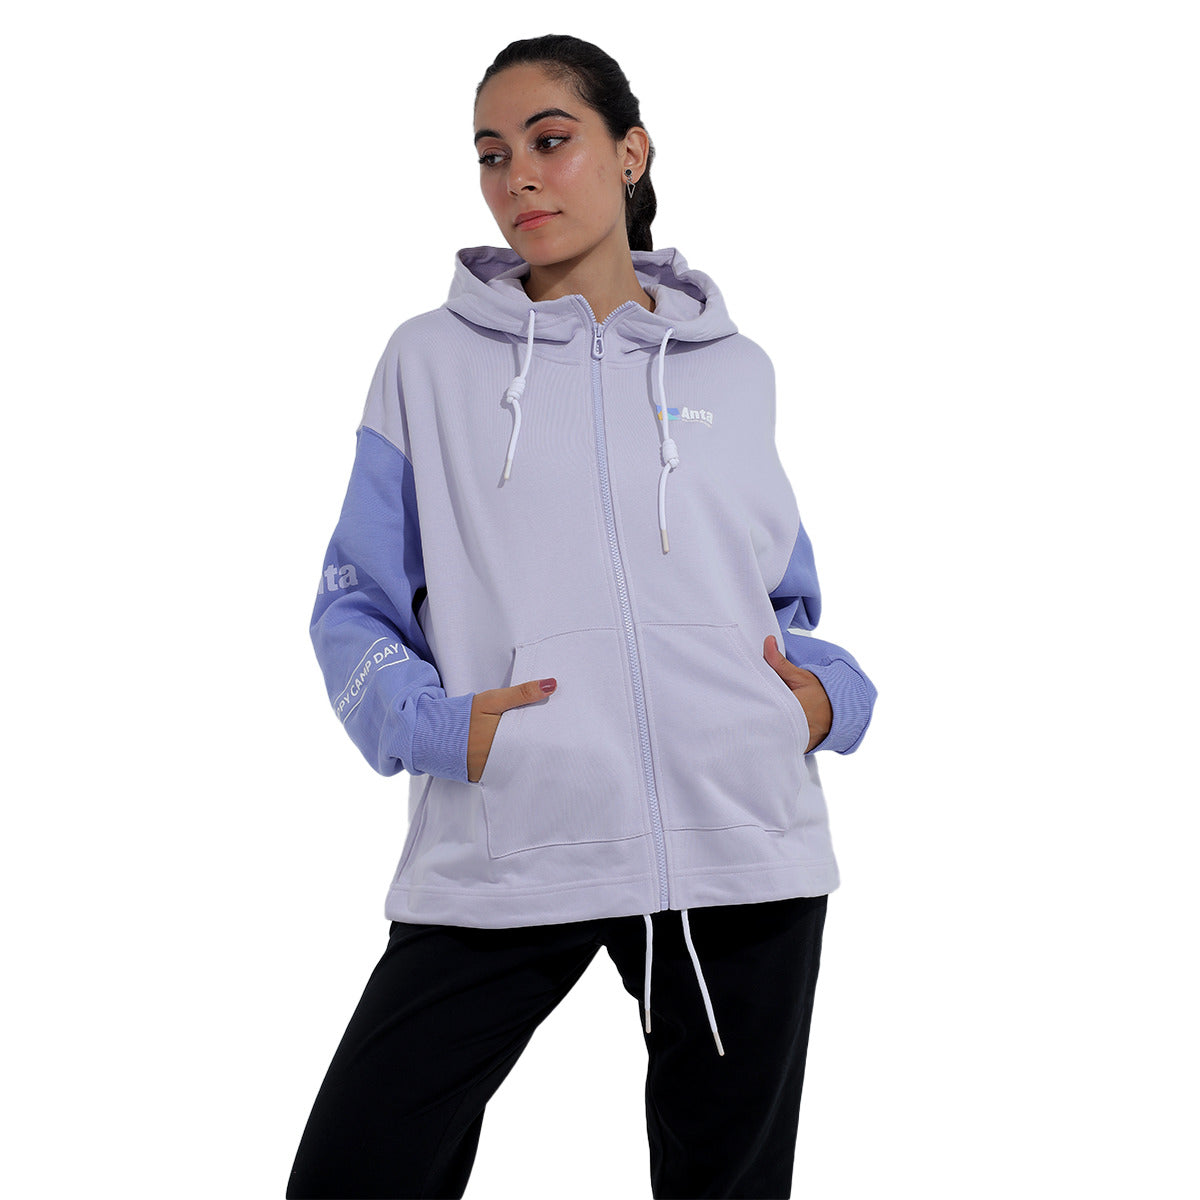 Anta Hooded Sweatshirt For Women, Purple & Blue